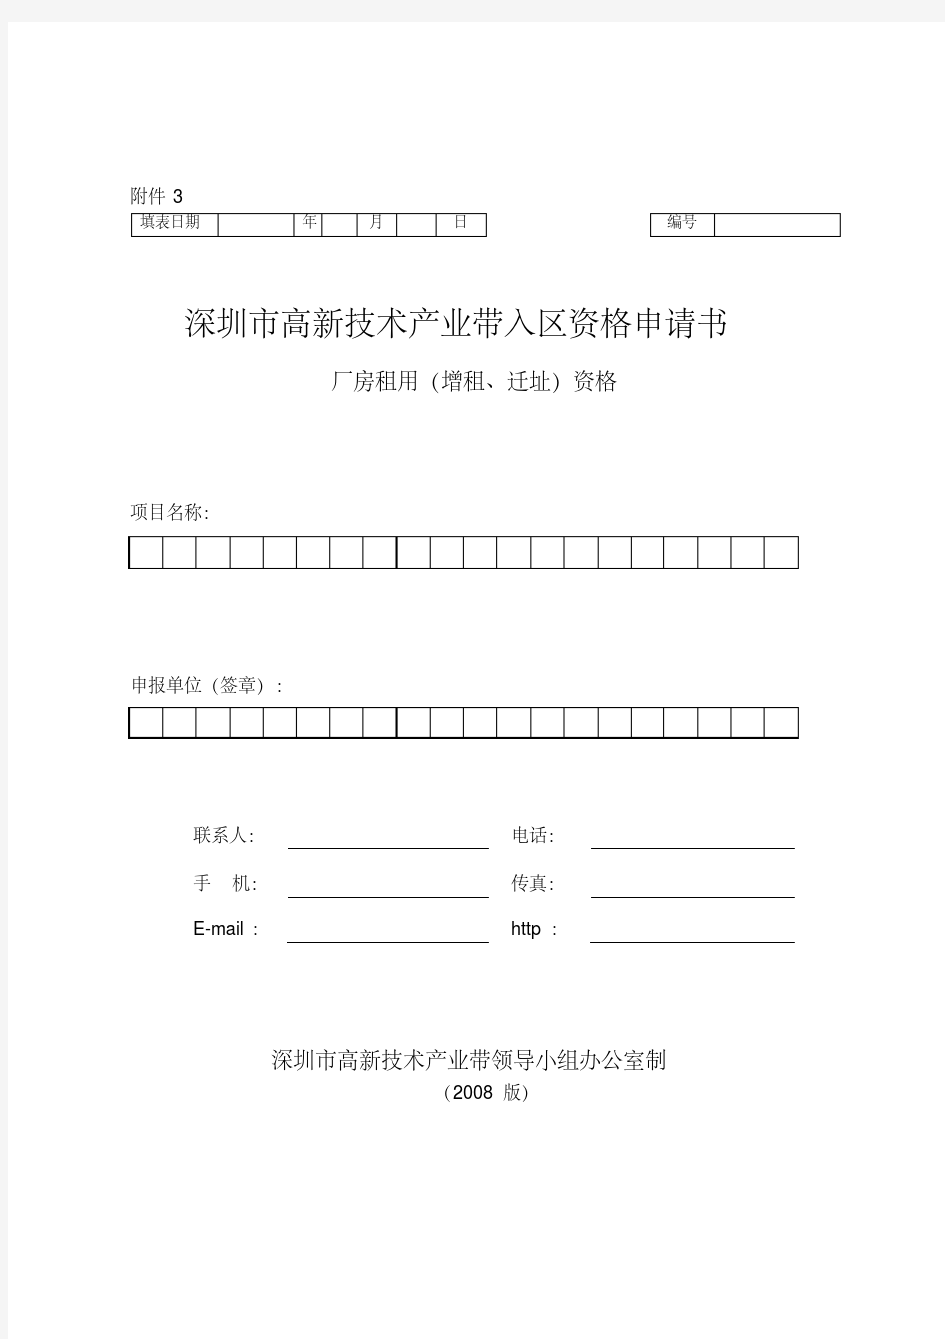 《深圳高新技术产业园区入区资格申请书》